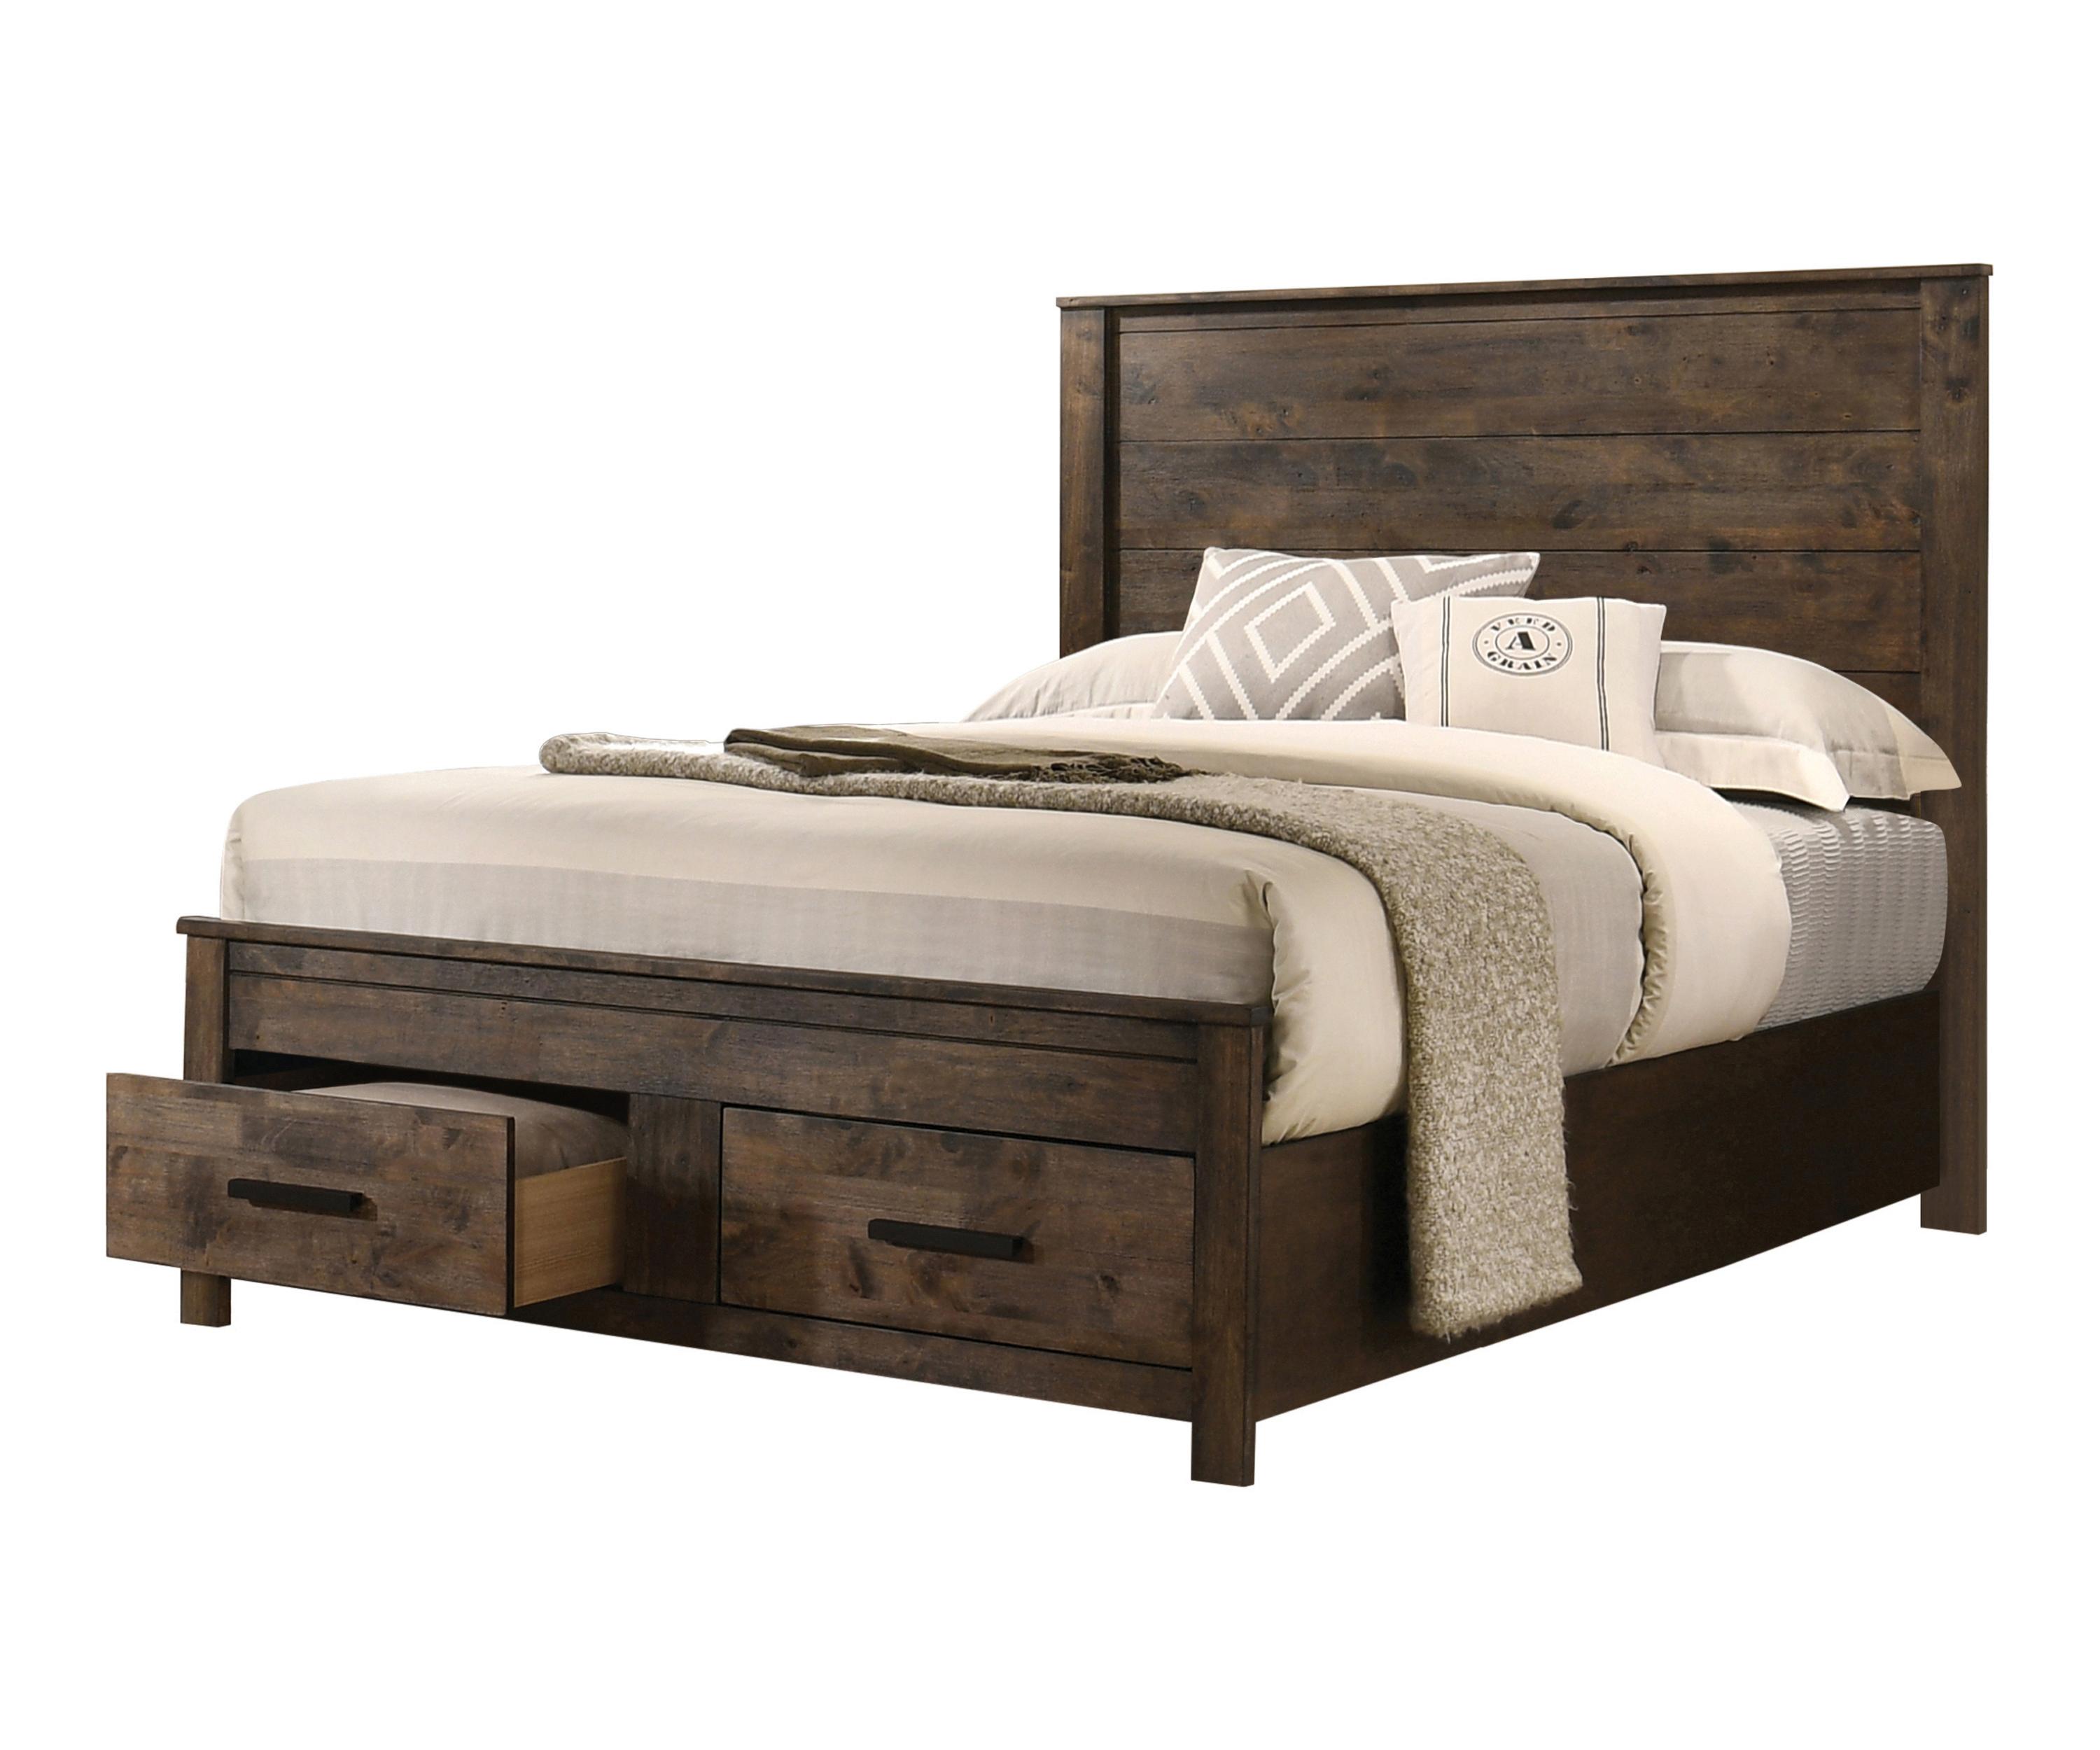 Rustic Bed 222631KW Woodmont 222631KW in Golden Brown 